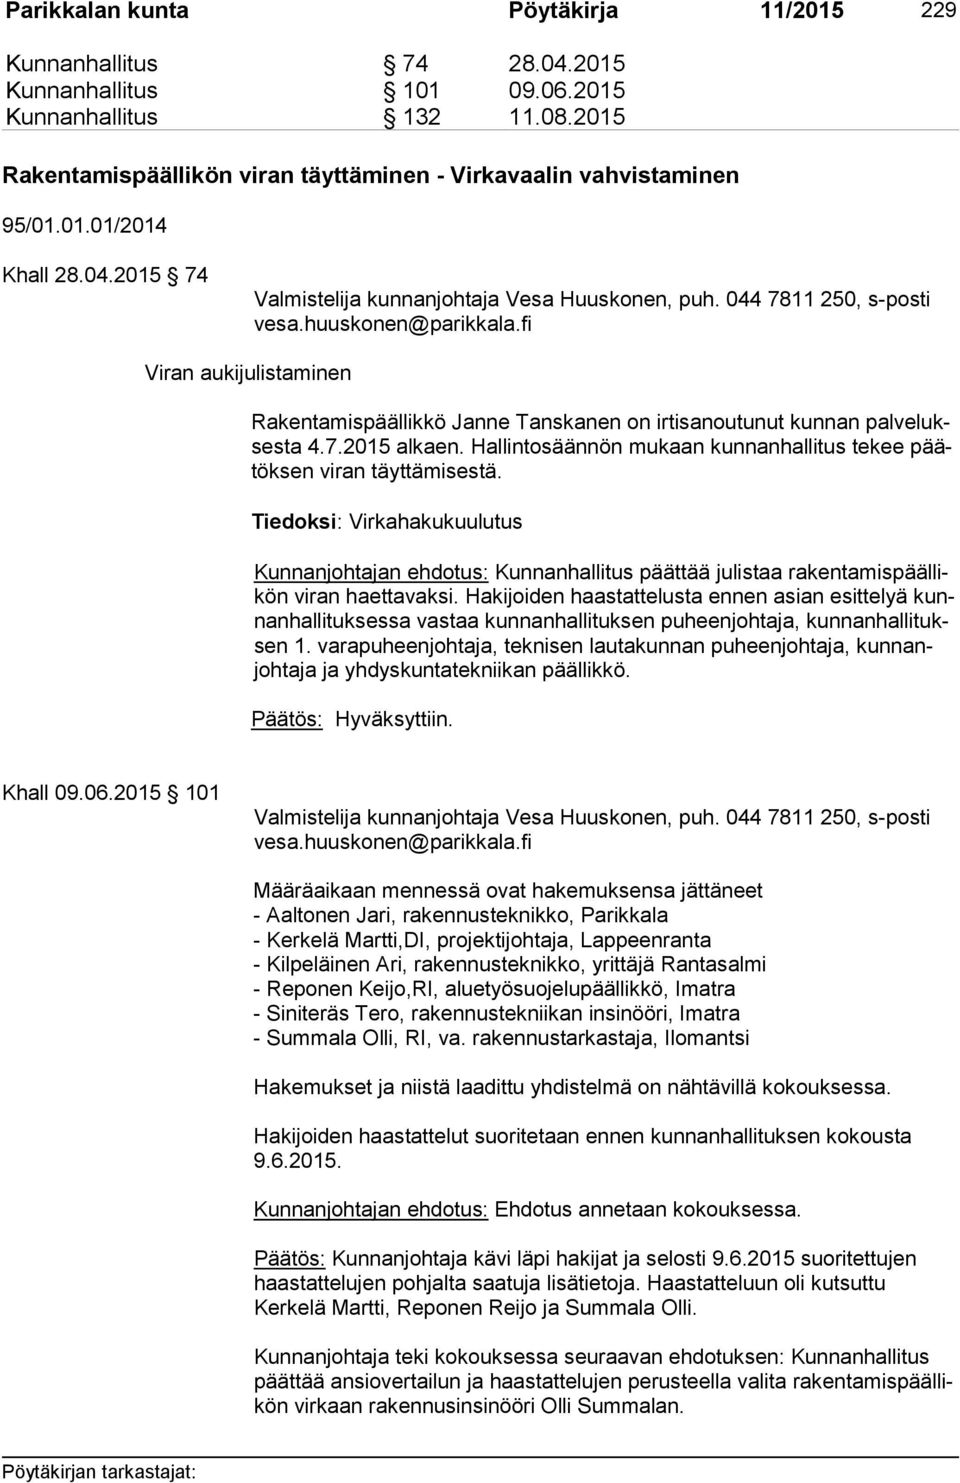 huuskonen@parikkala.fi Viran aukijulistaminen Rakentamispäällikkö Janne Tanskanen on irtisanoutunut kunnan pal ve lukses ta 4.7.2015 al kaen.